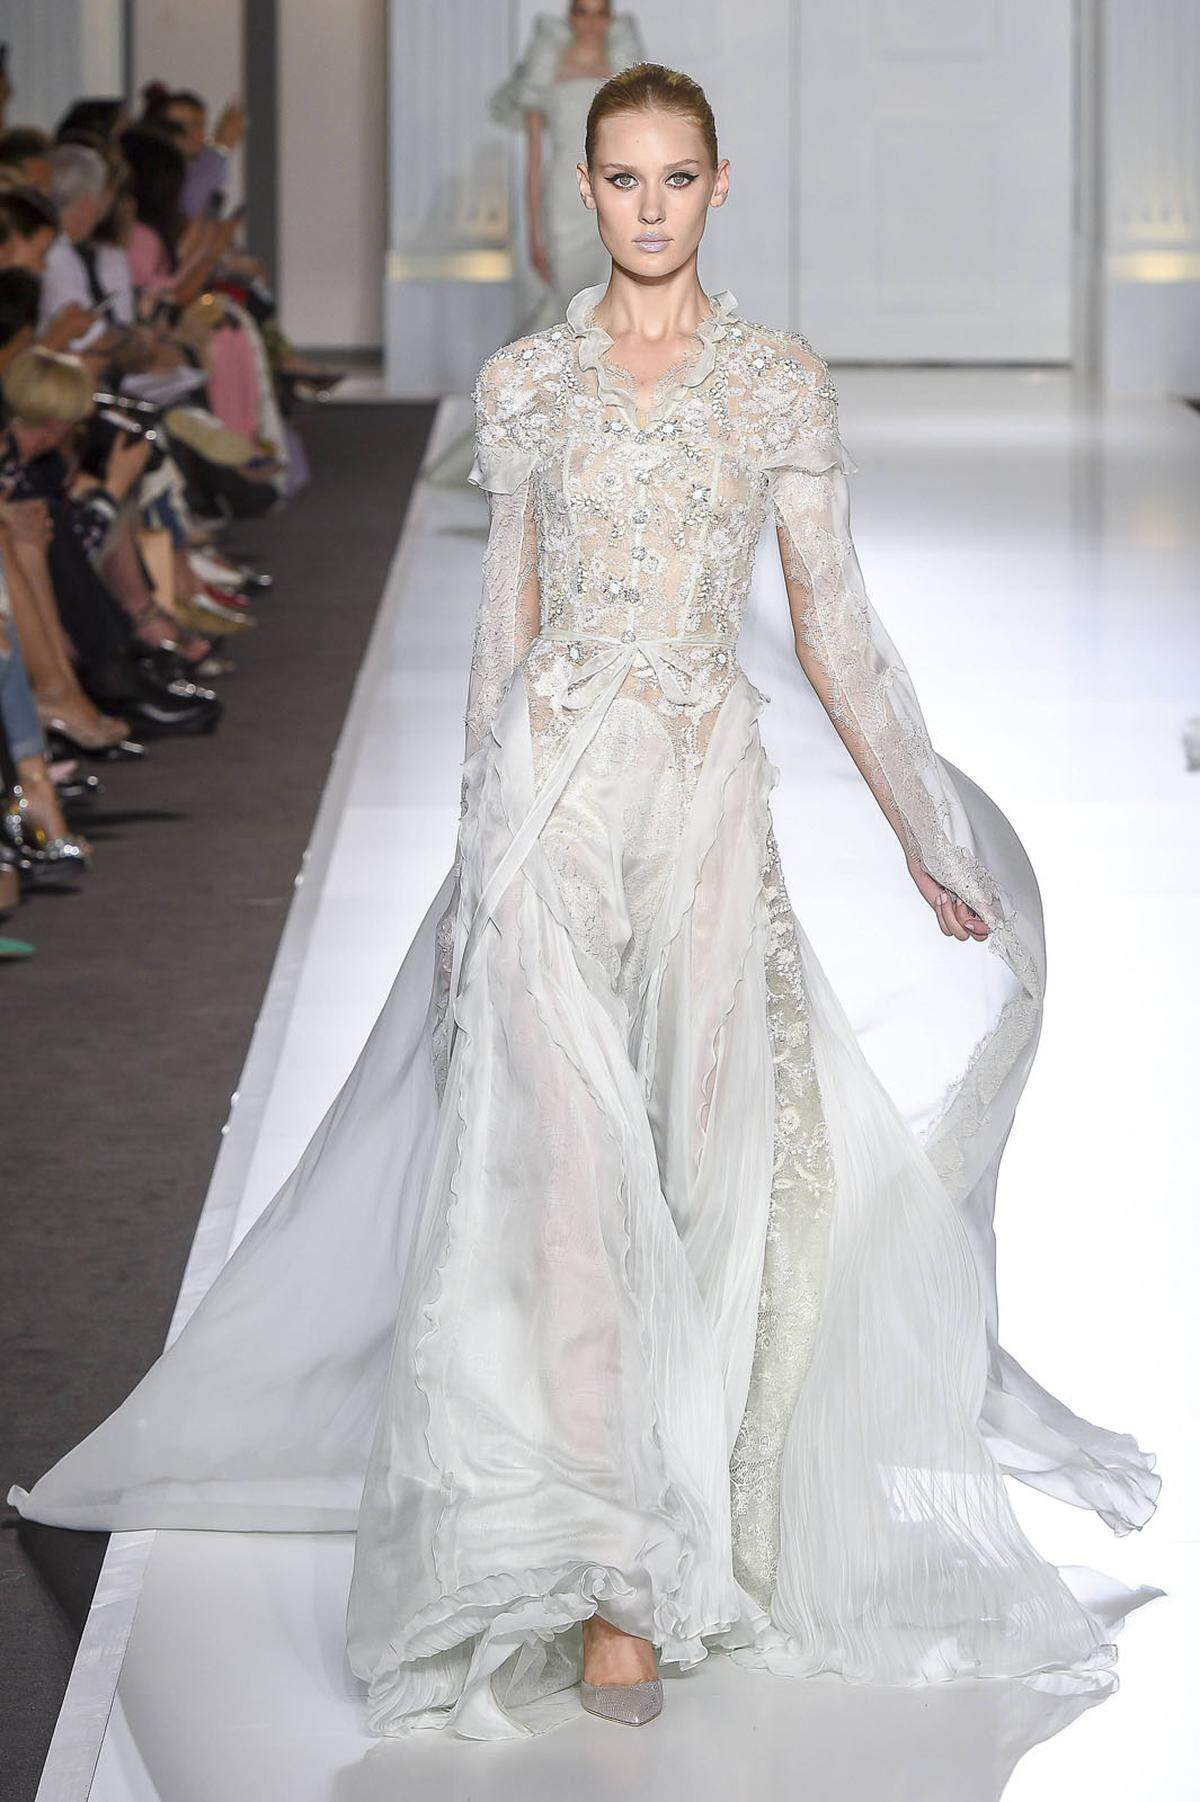 Da Meghan Markle für ihre Verlobungsfotos ein Kleid von Ralph & Russo trug, ist auch das australische Designduo Tamara Ralph und Michael Russo im Gespräch.  